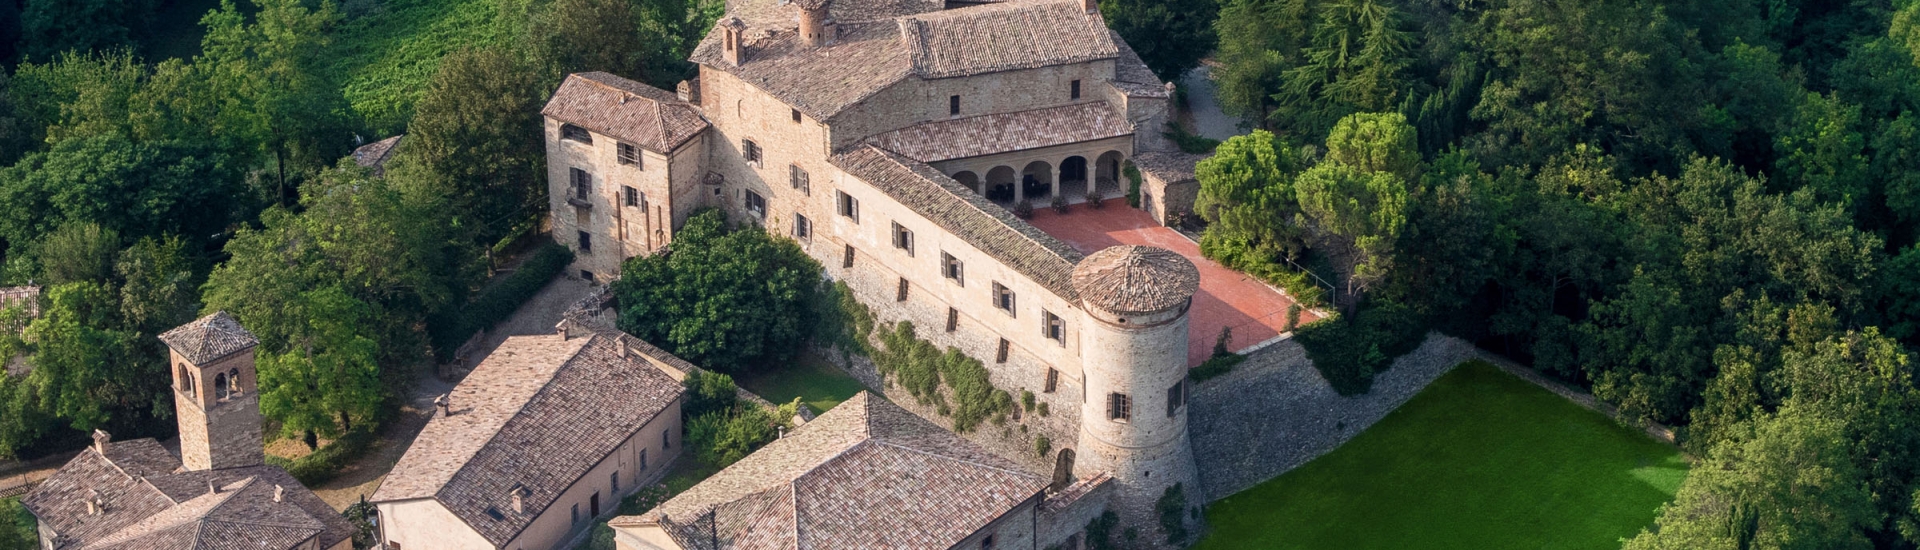 Castello di Scipione dei Marchesi Pallavicino - Panoramica Castello di Scipione foto di: |Foto Bocelli - Castello di Scipione| - Castello di Scipione